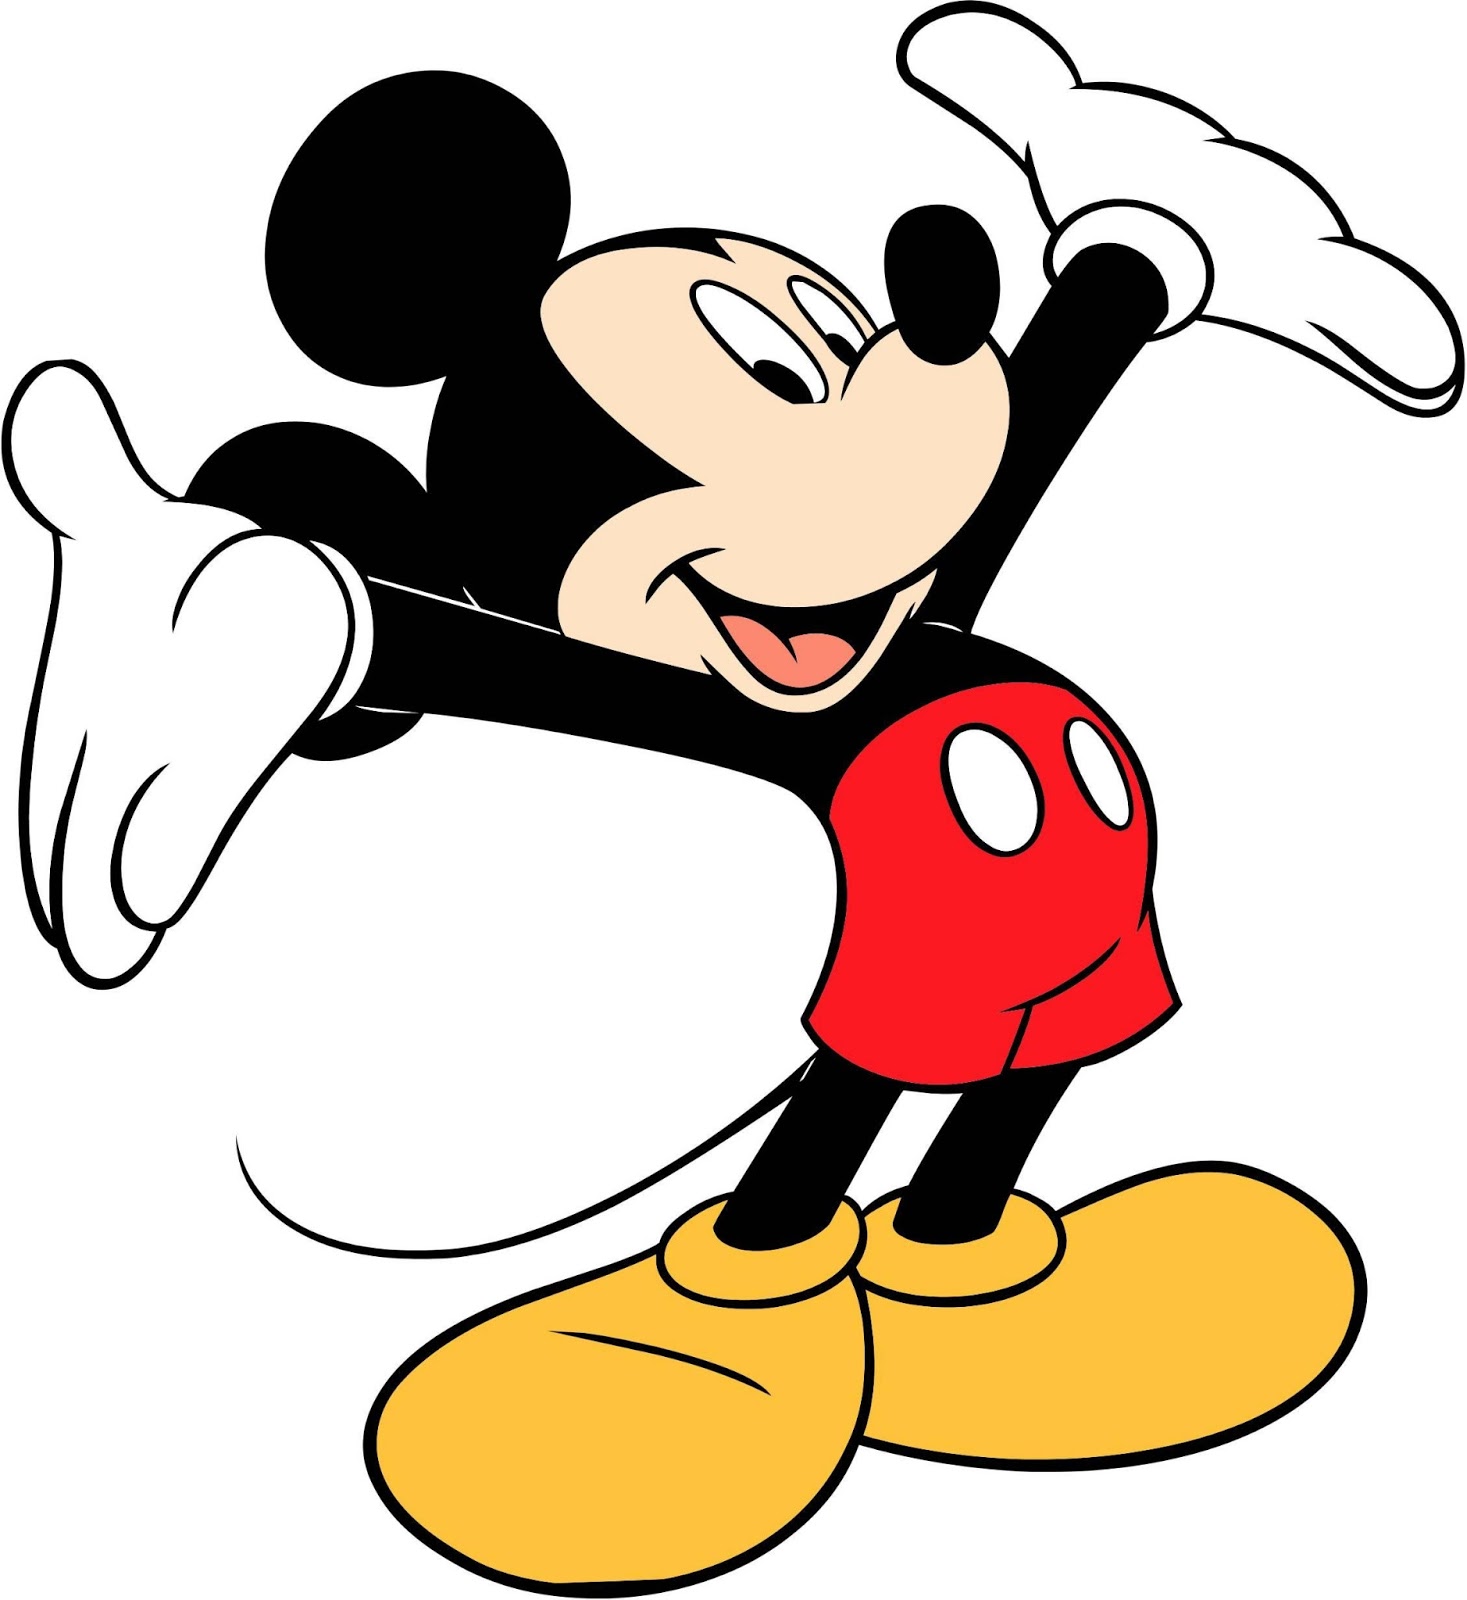  Mickey  Mouse  Wallpaper Animasi Auto Design Tech